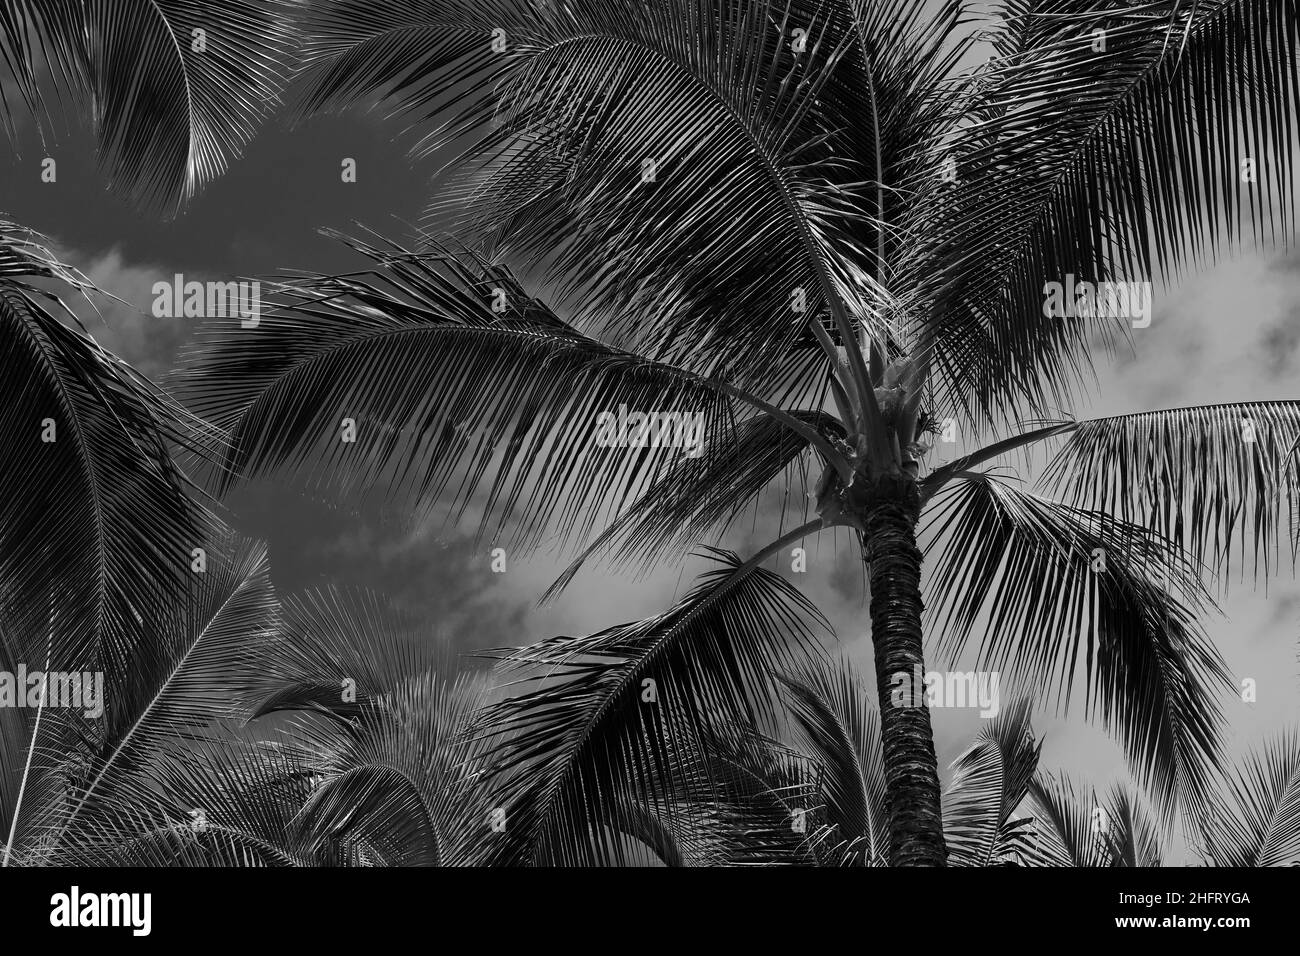 Ein schwarz-weißes Kunstfoto von Palmen am Himmel, Hawaii Stockfoto